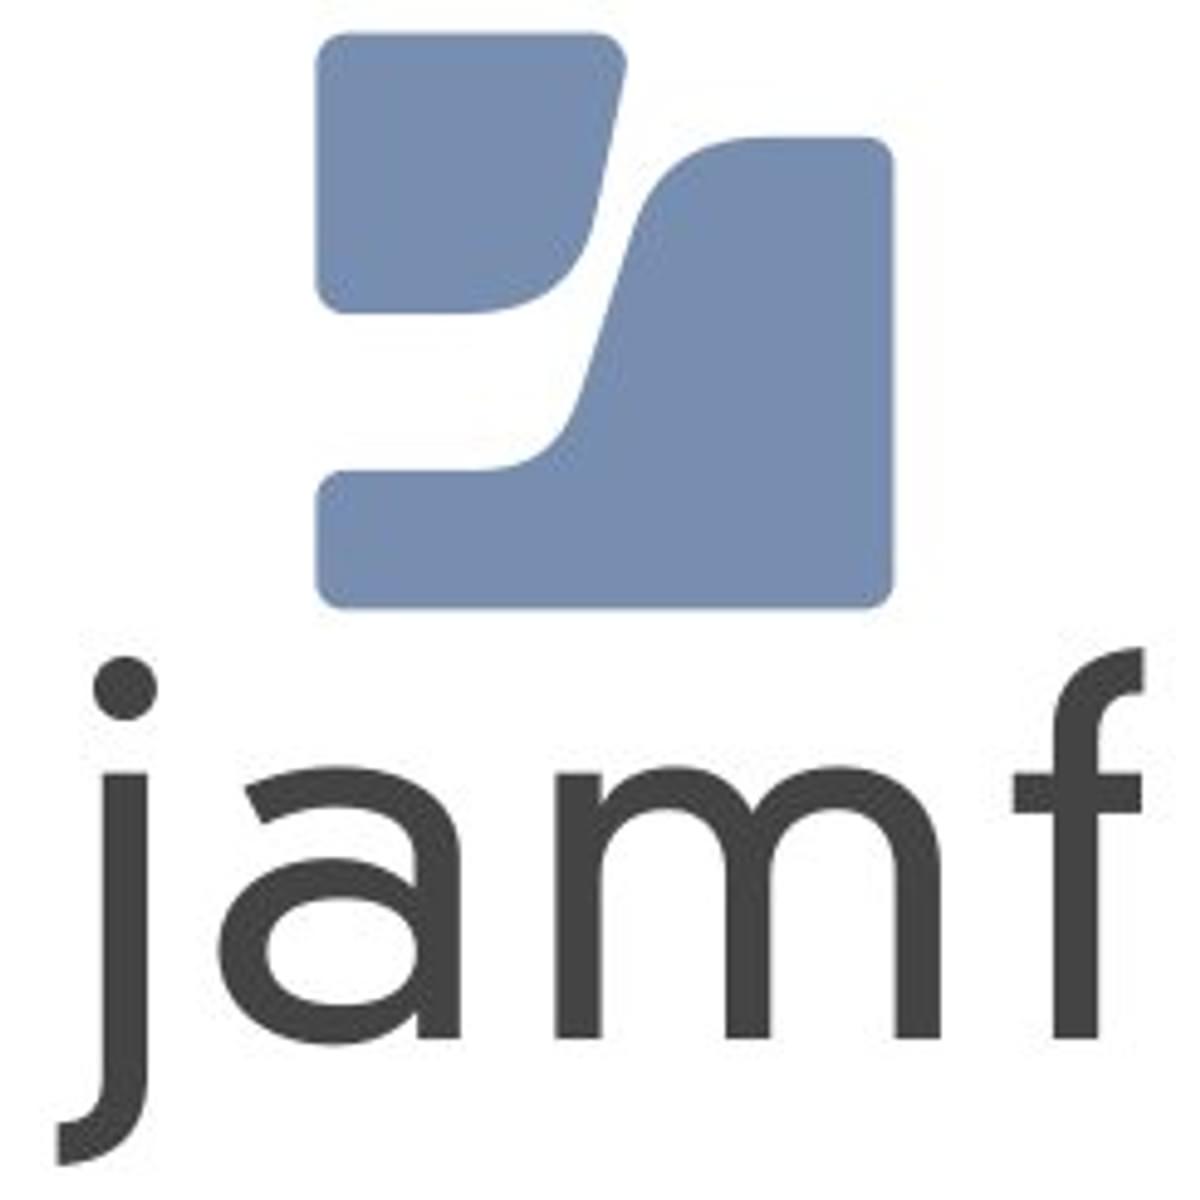 Apple beheerspecialist Jamf plant beursgang image